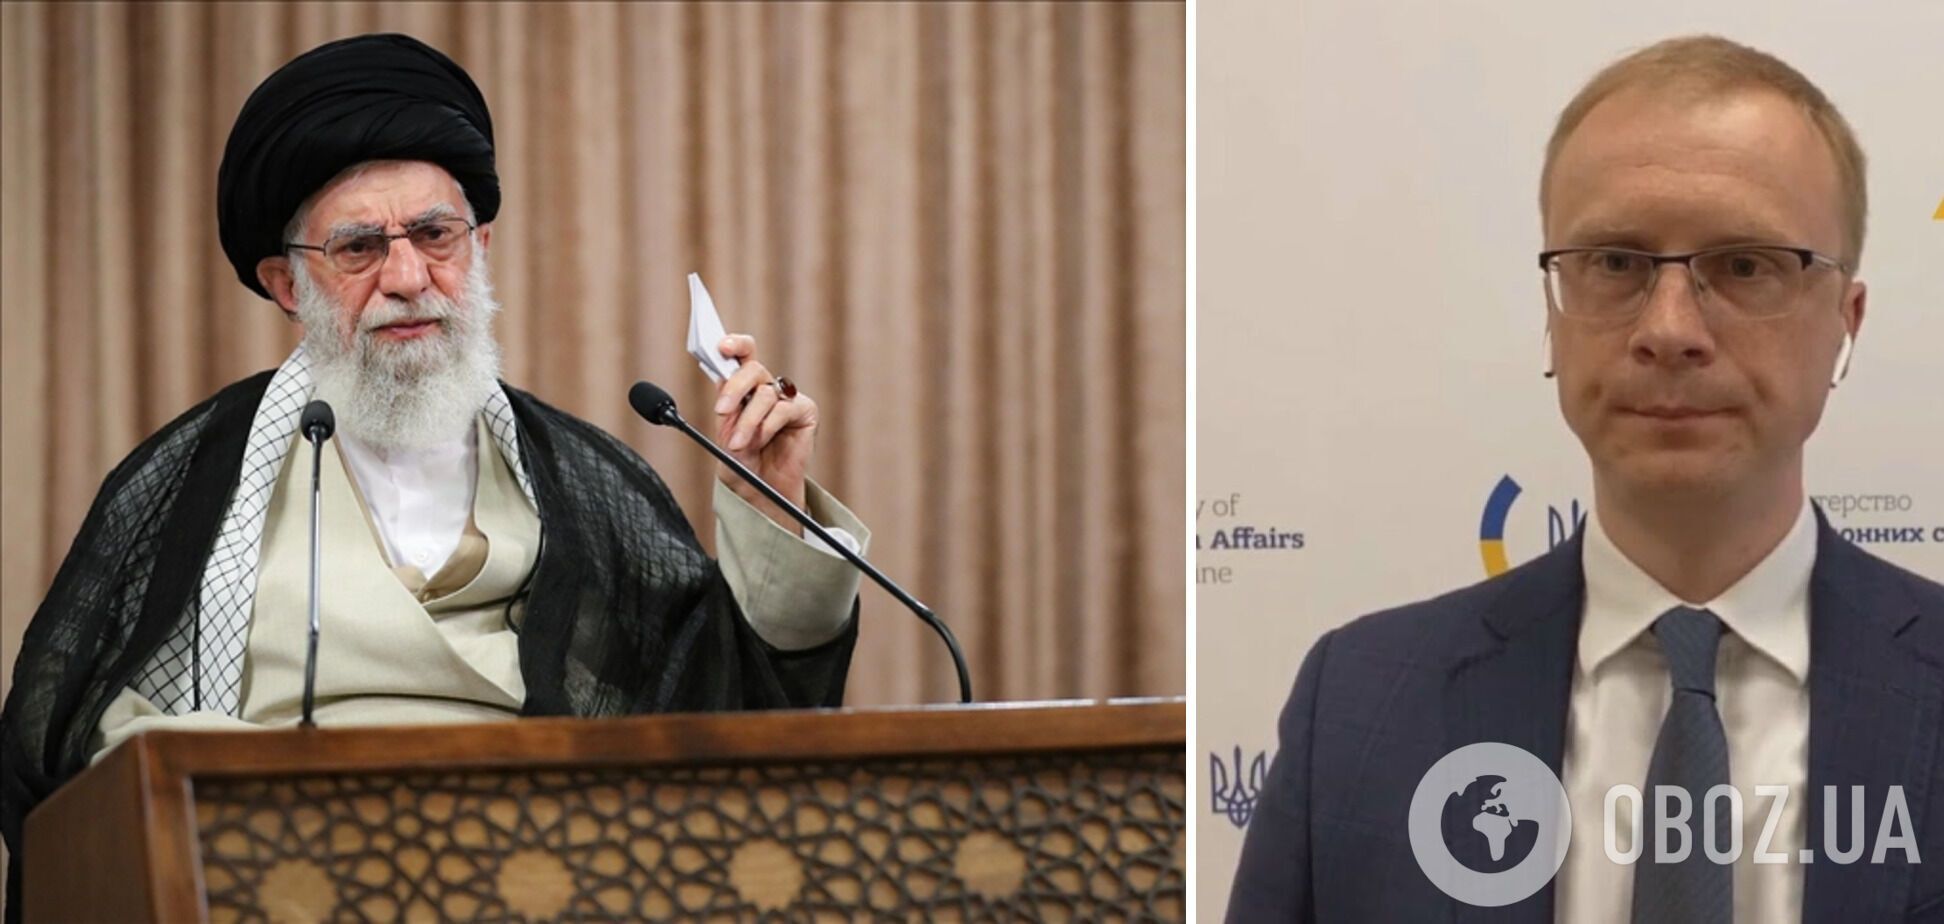 Олег Николенко назвал упреки Али Хаменеи о причинах войны манипулятивными